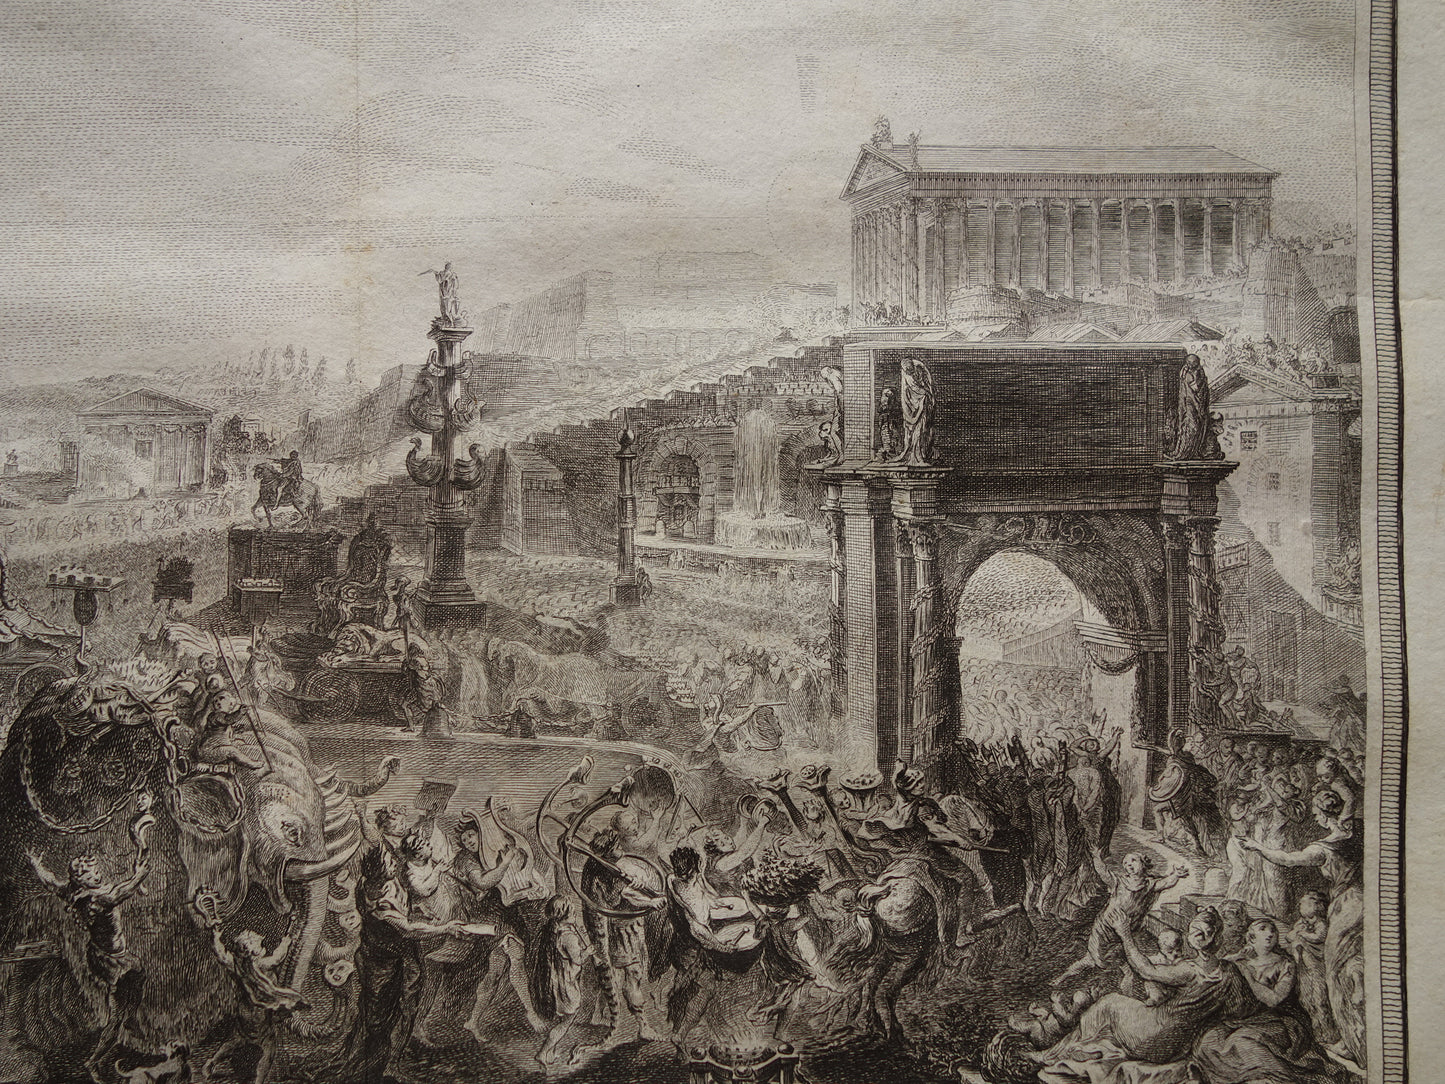 Zegetocht generaal Gnaeus Pompeius Magnus in Rome - Geschiedenis van Rome oude prent uit 1798 - originele antieke illustratie  Pompeius de Grote - vintage print muurdecoratie